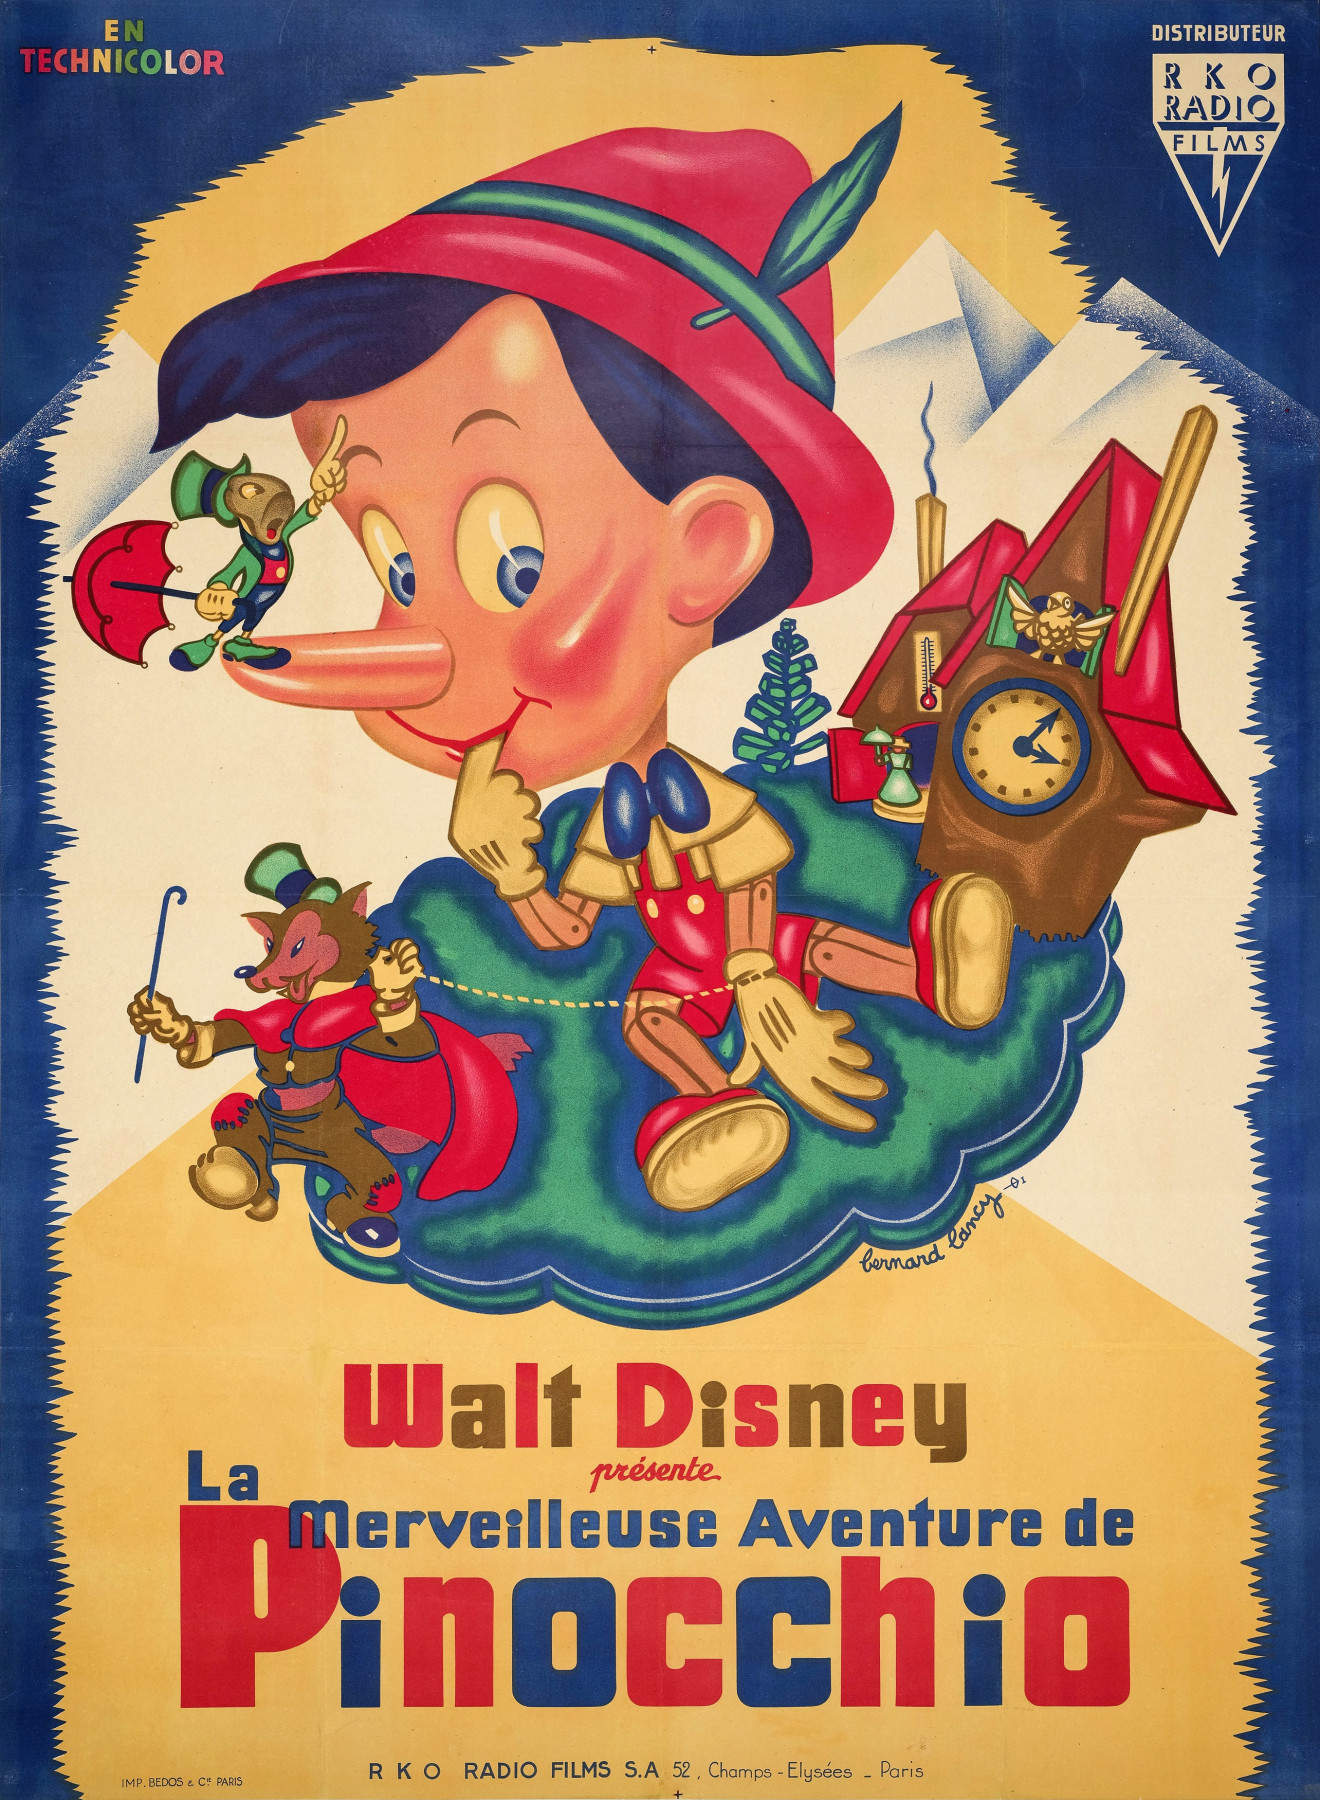 Illustration de Pinocchio